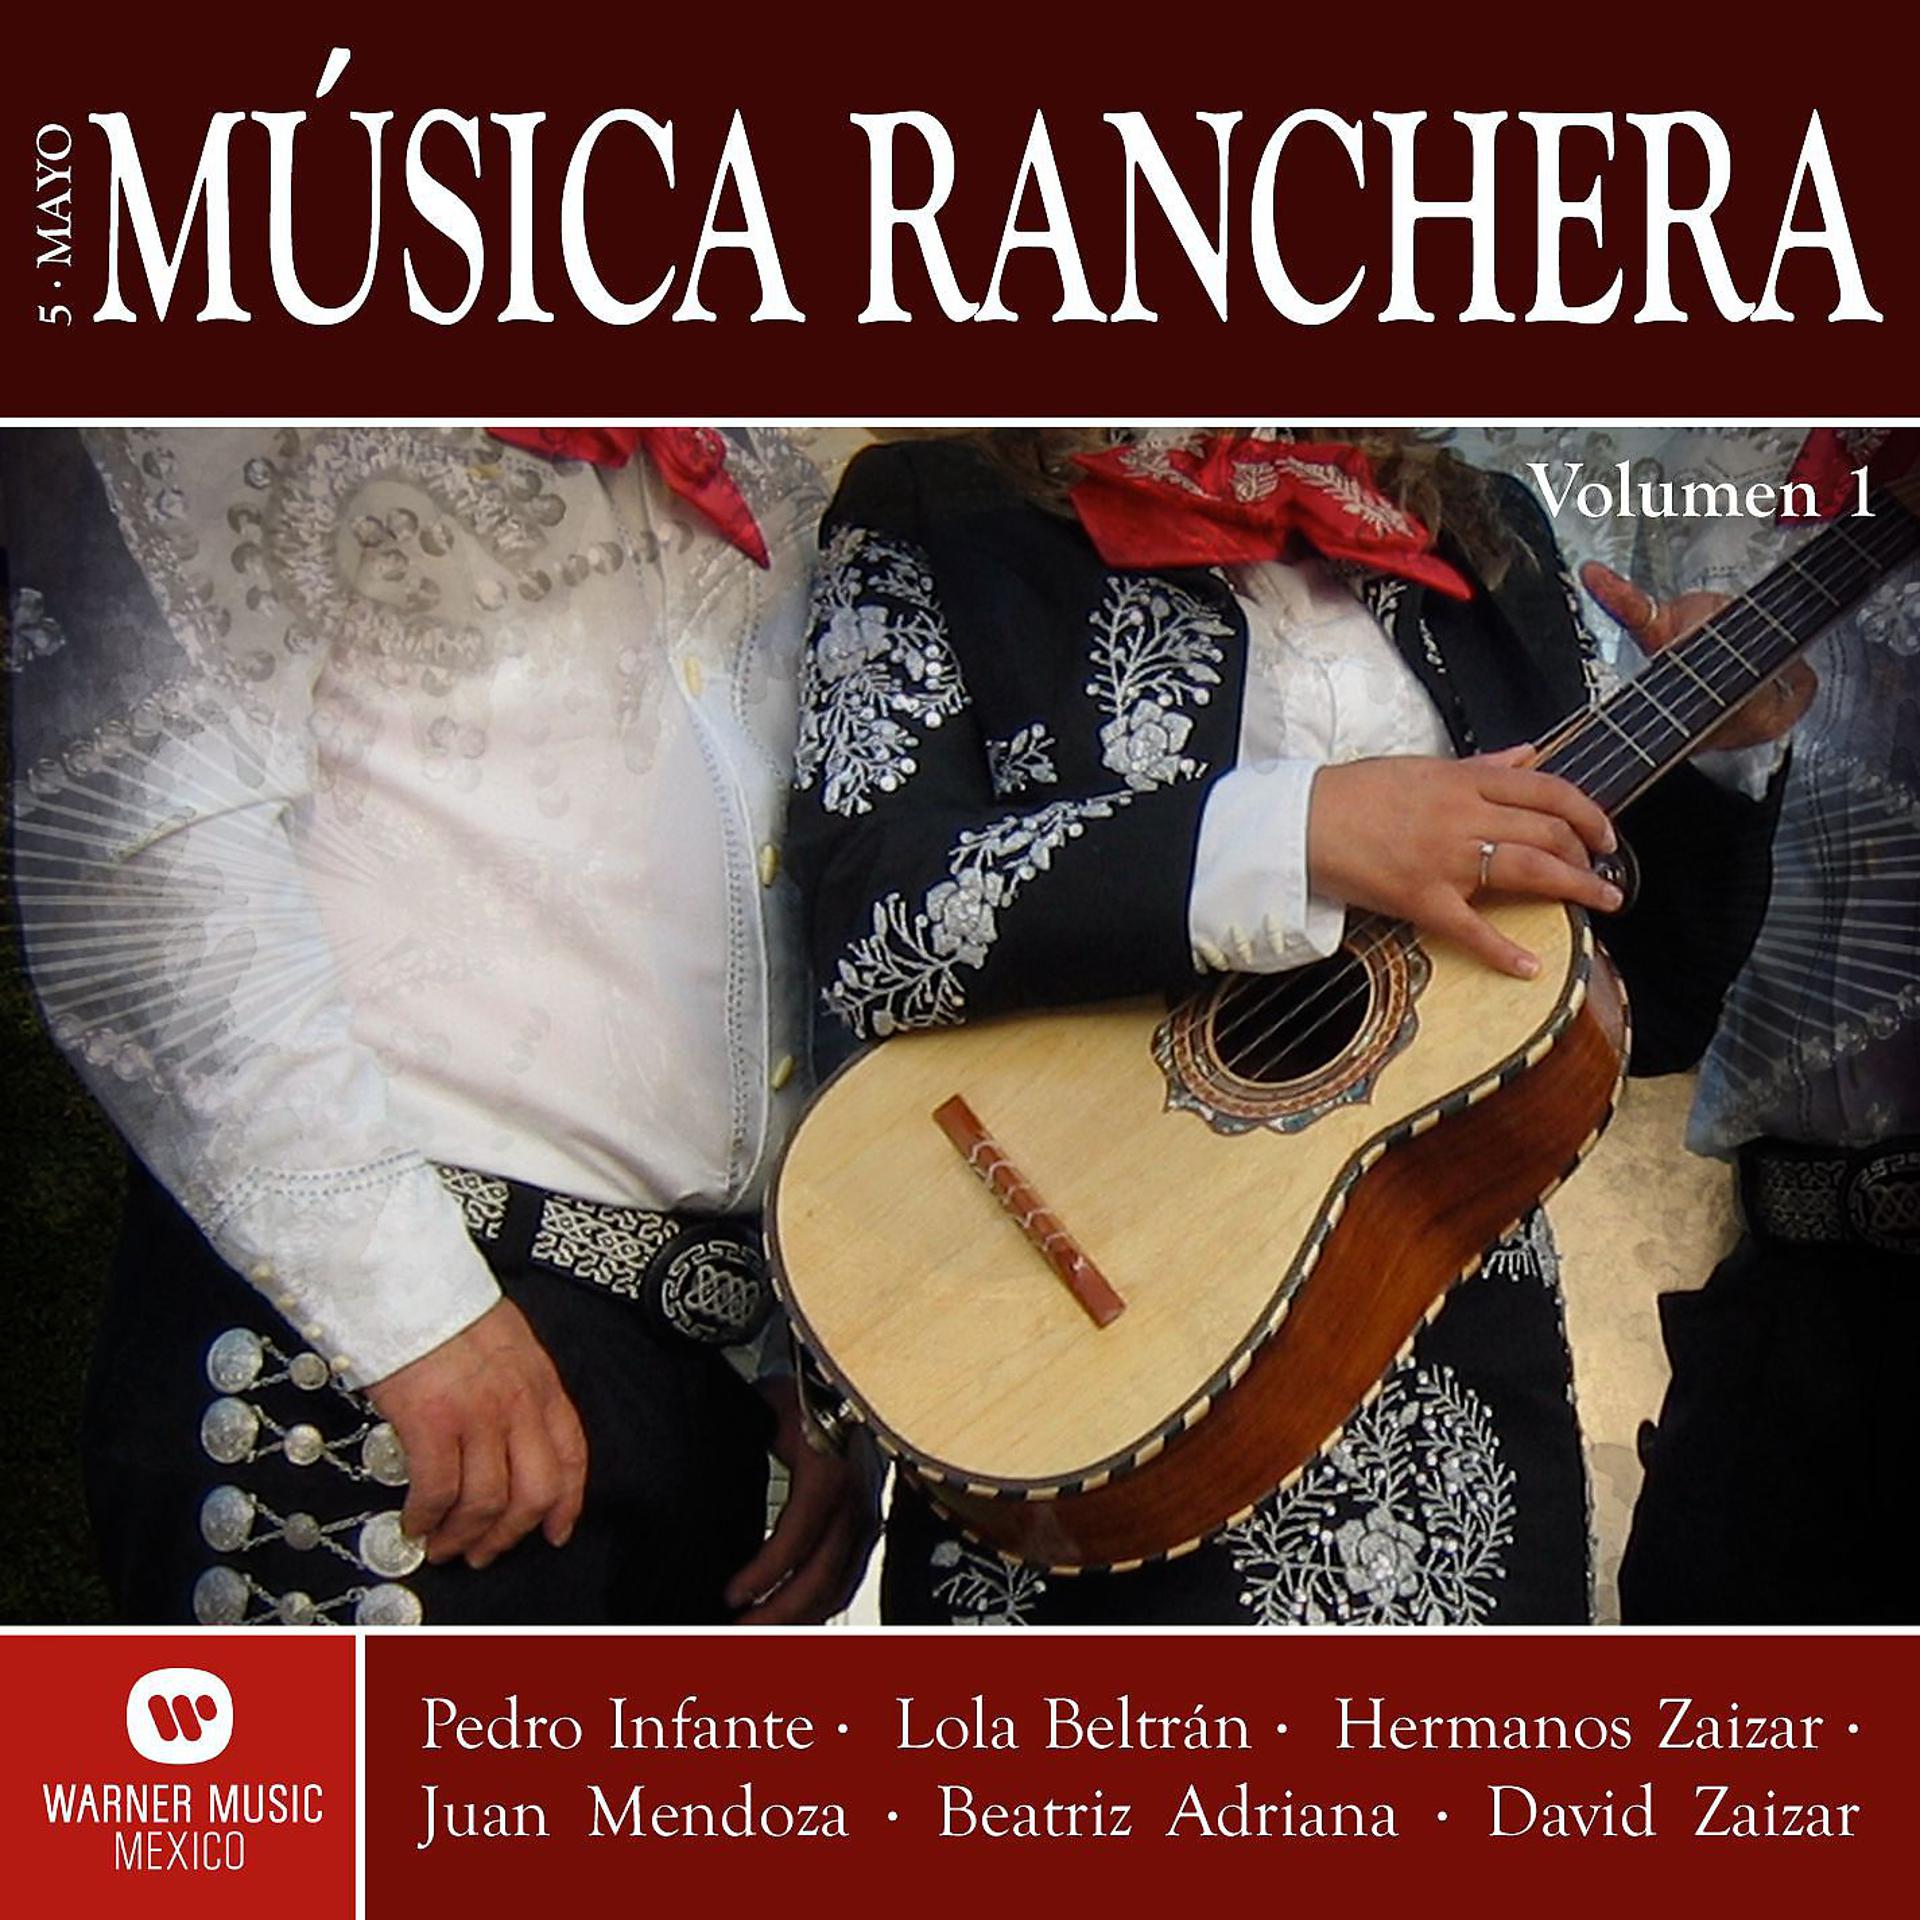 Постер альбома Musica Ranchera "Cinco de Mayo" Vol. 1